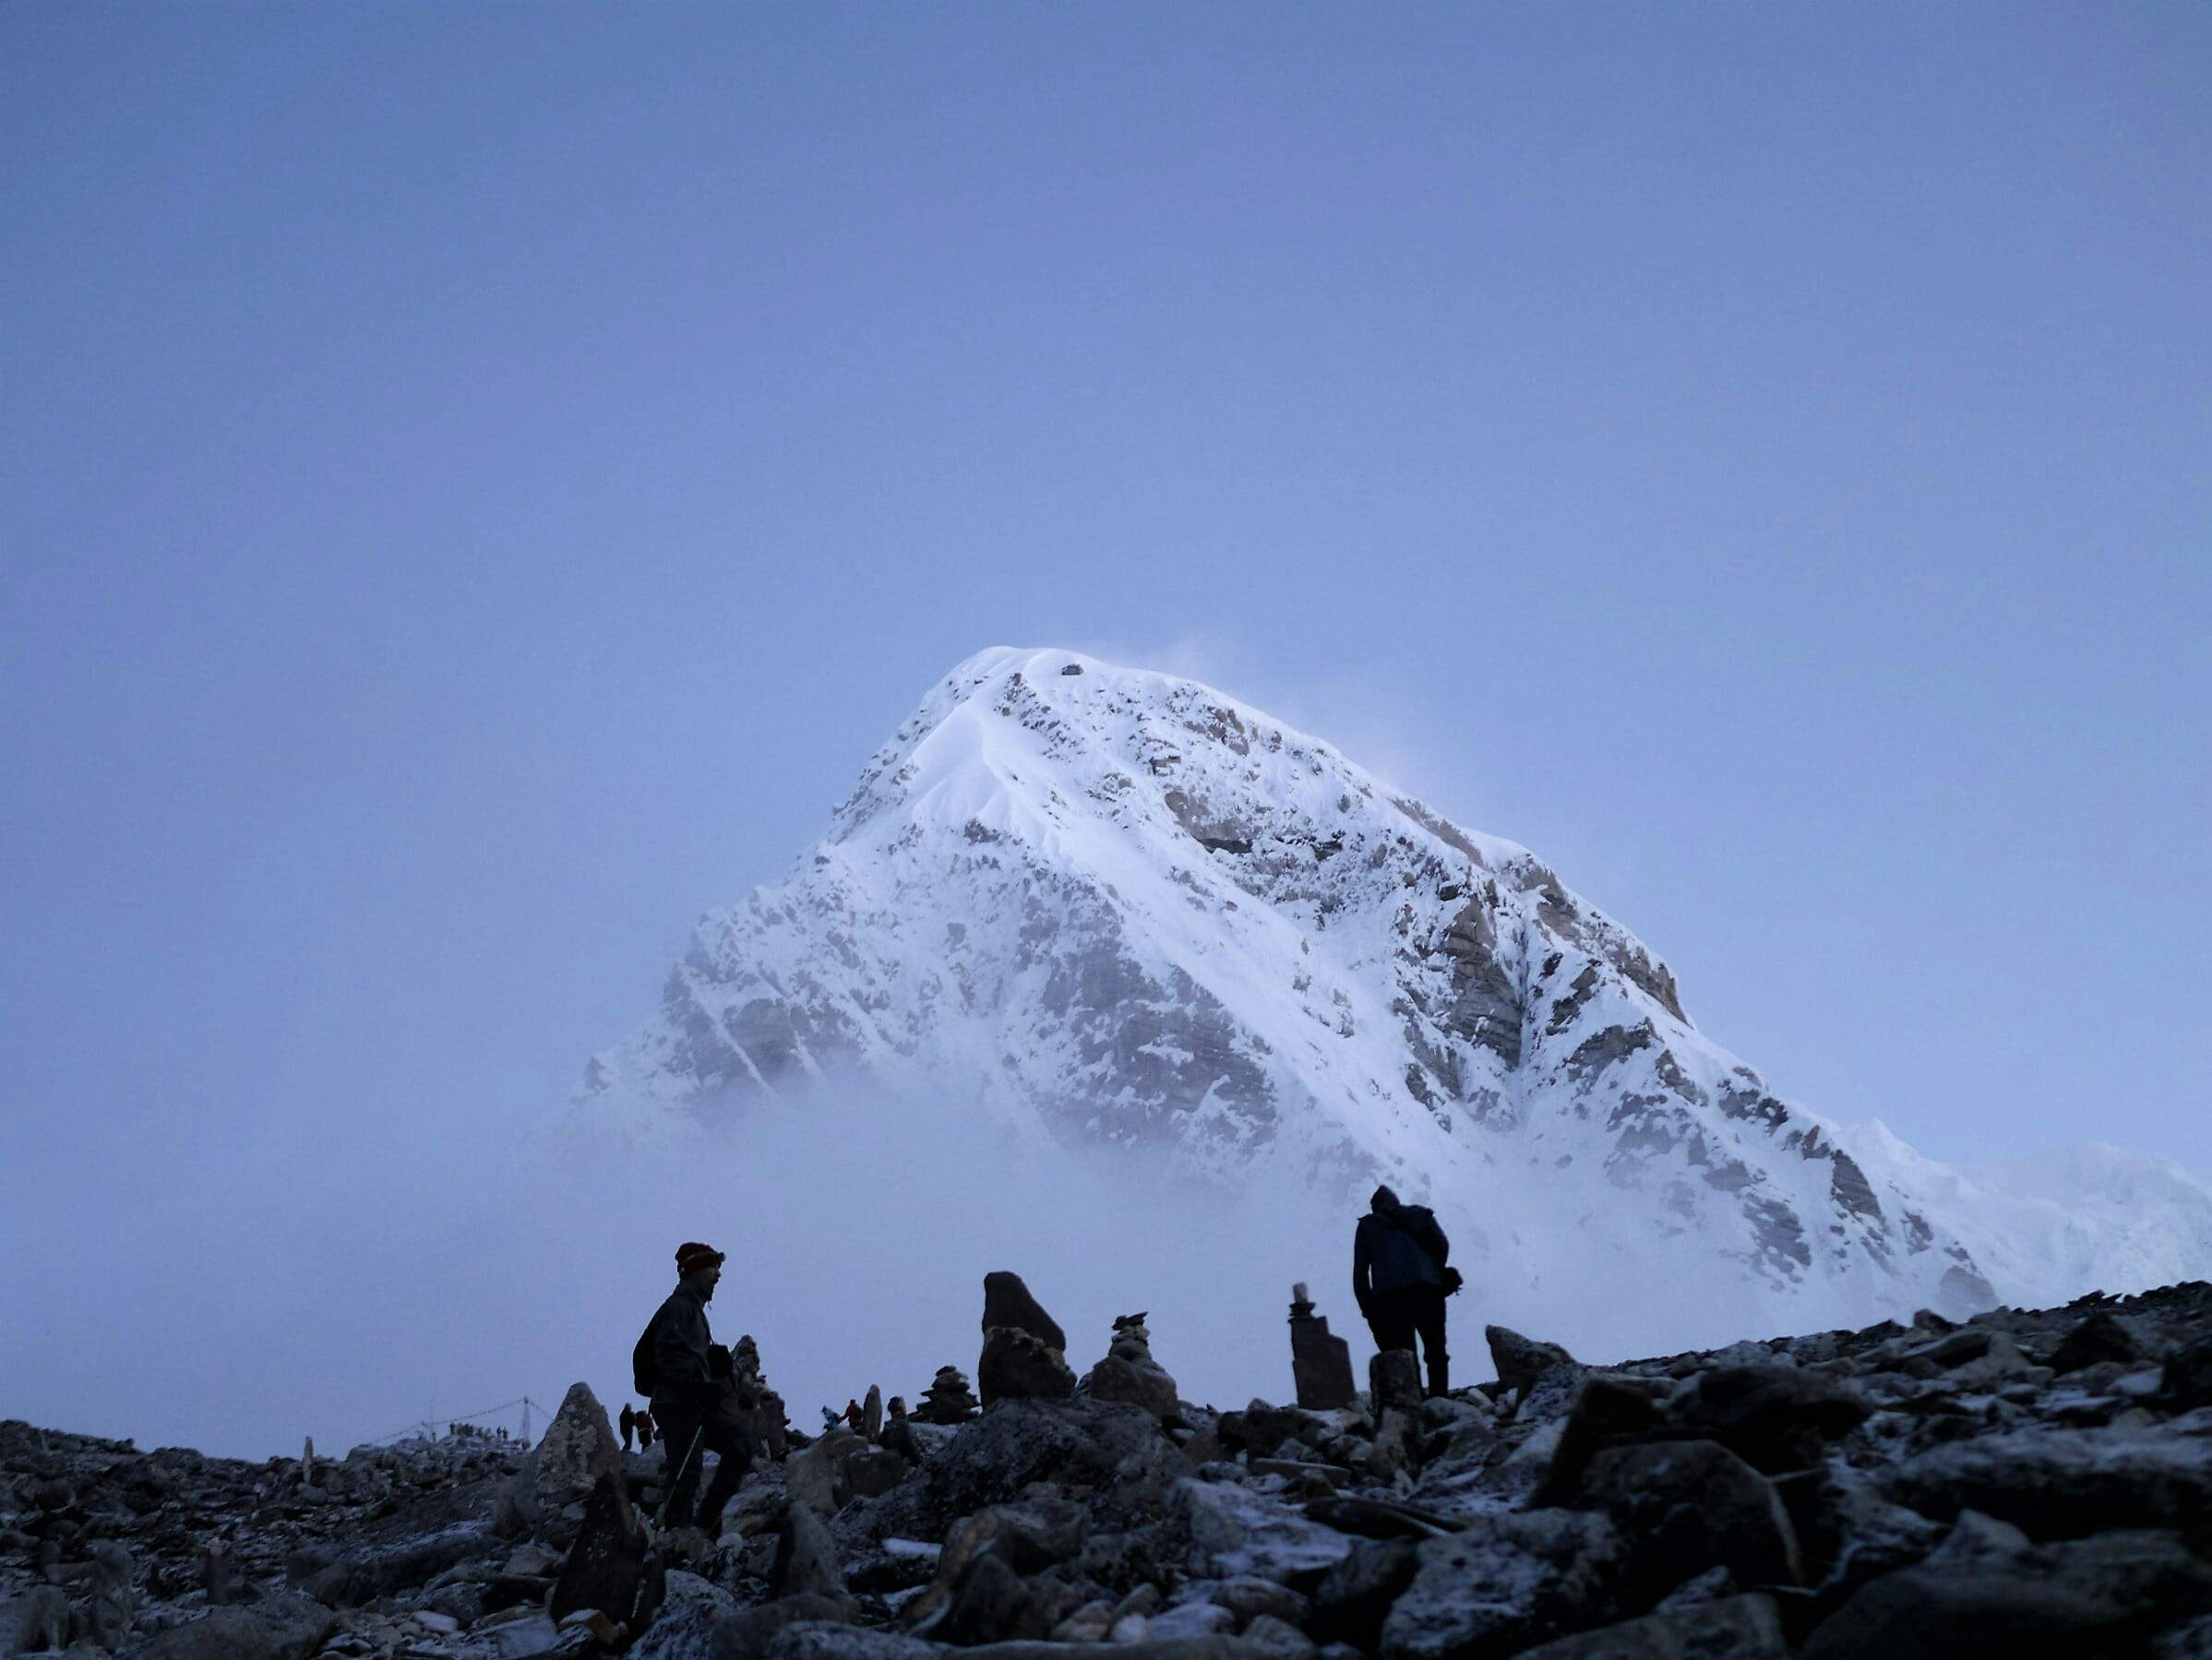 Requisit sorprenent per a tots aquells que vulguin escalar l'Everest: endur-se els propis excrements